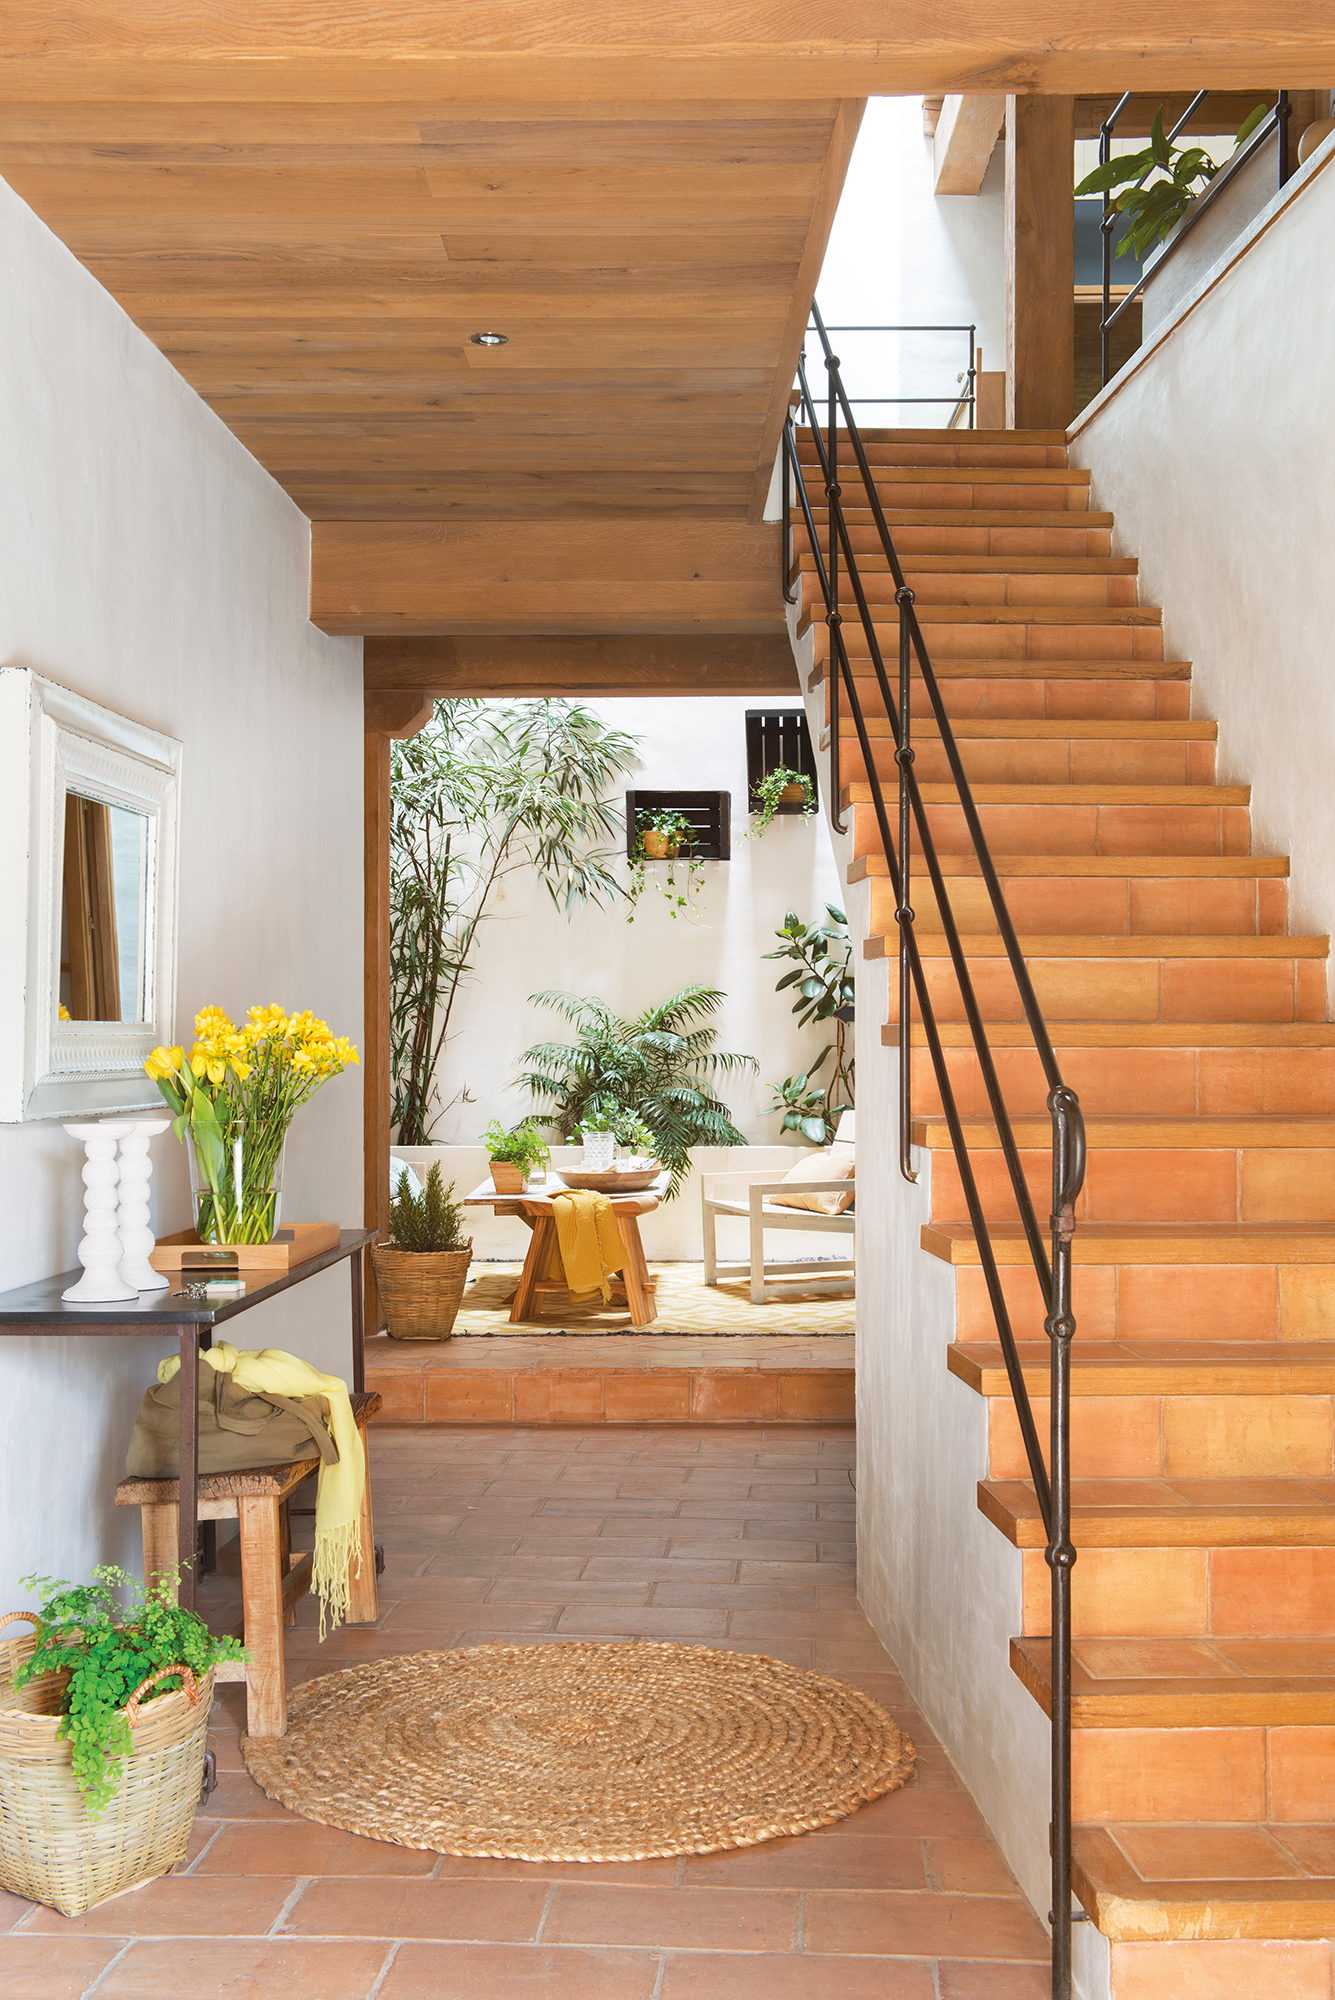 Recibidor con escalera, consola y al fondo patio